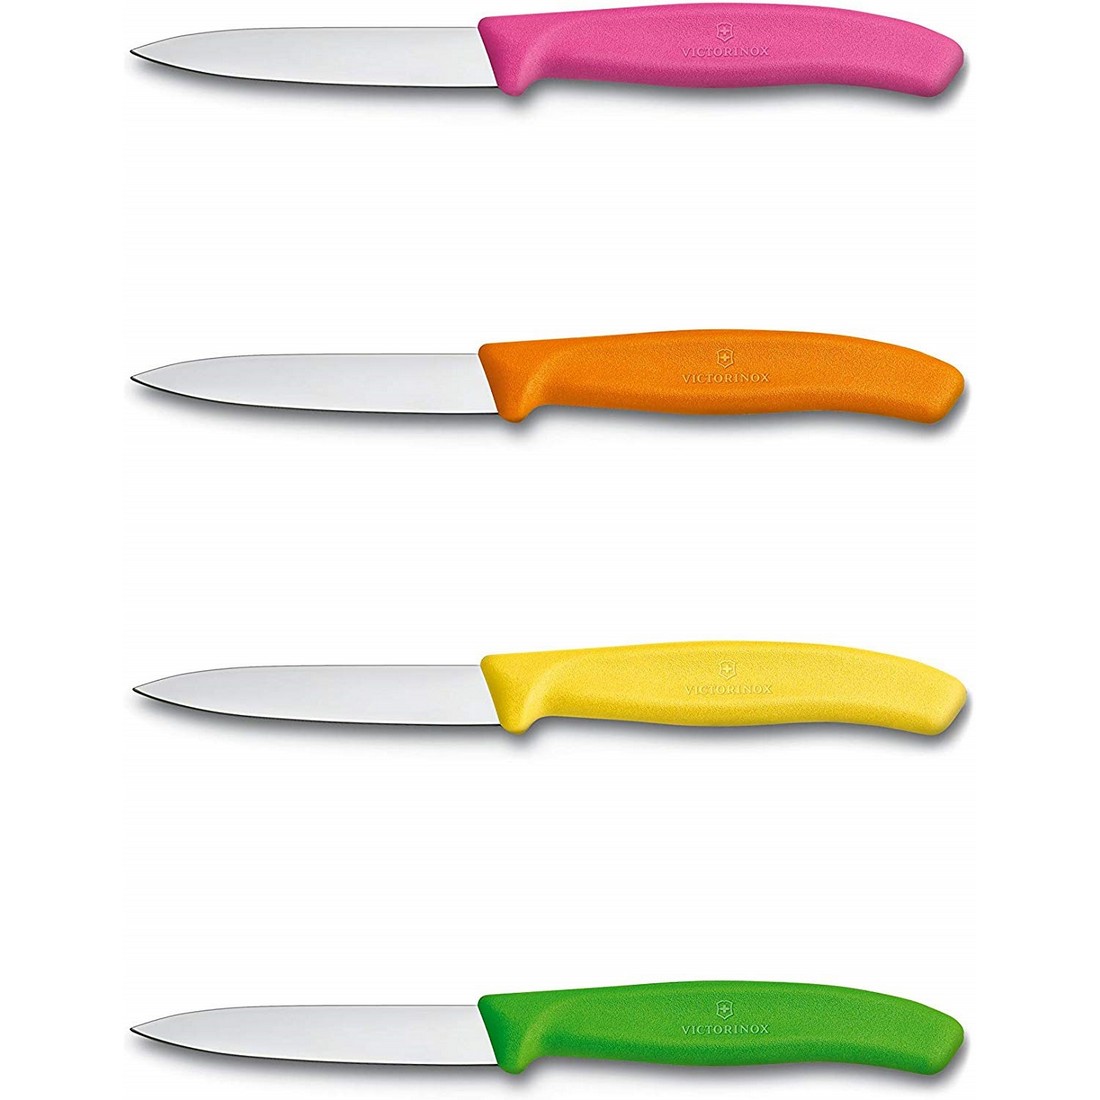 Schälmesser 8 cm – verschiedene Farben Gelb, Orange, Rosa, Grün – Sonderpackung mit 8 Stück